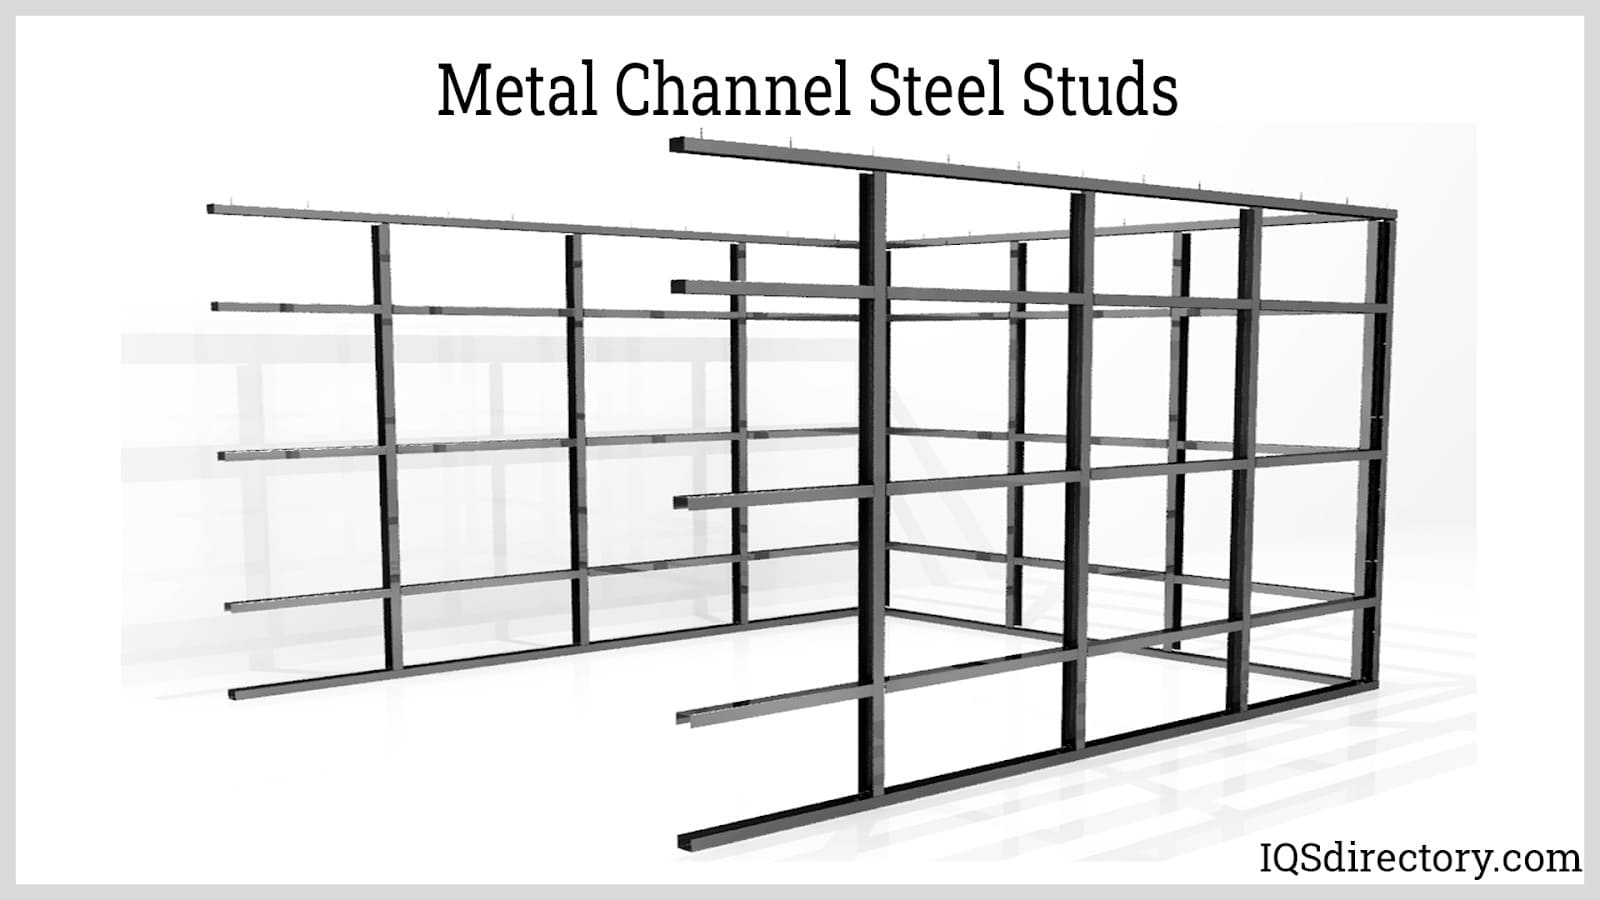 Metal Channel Steel Studs